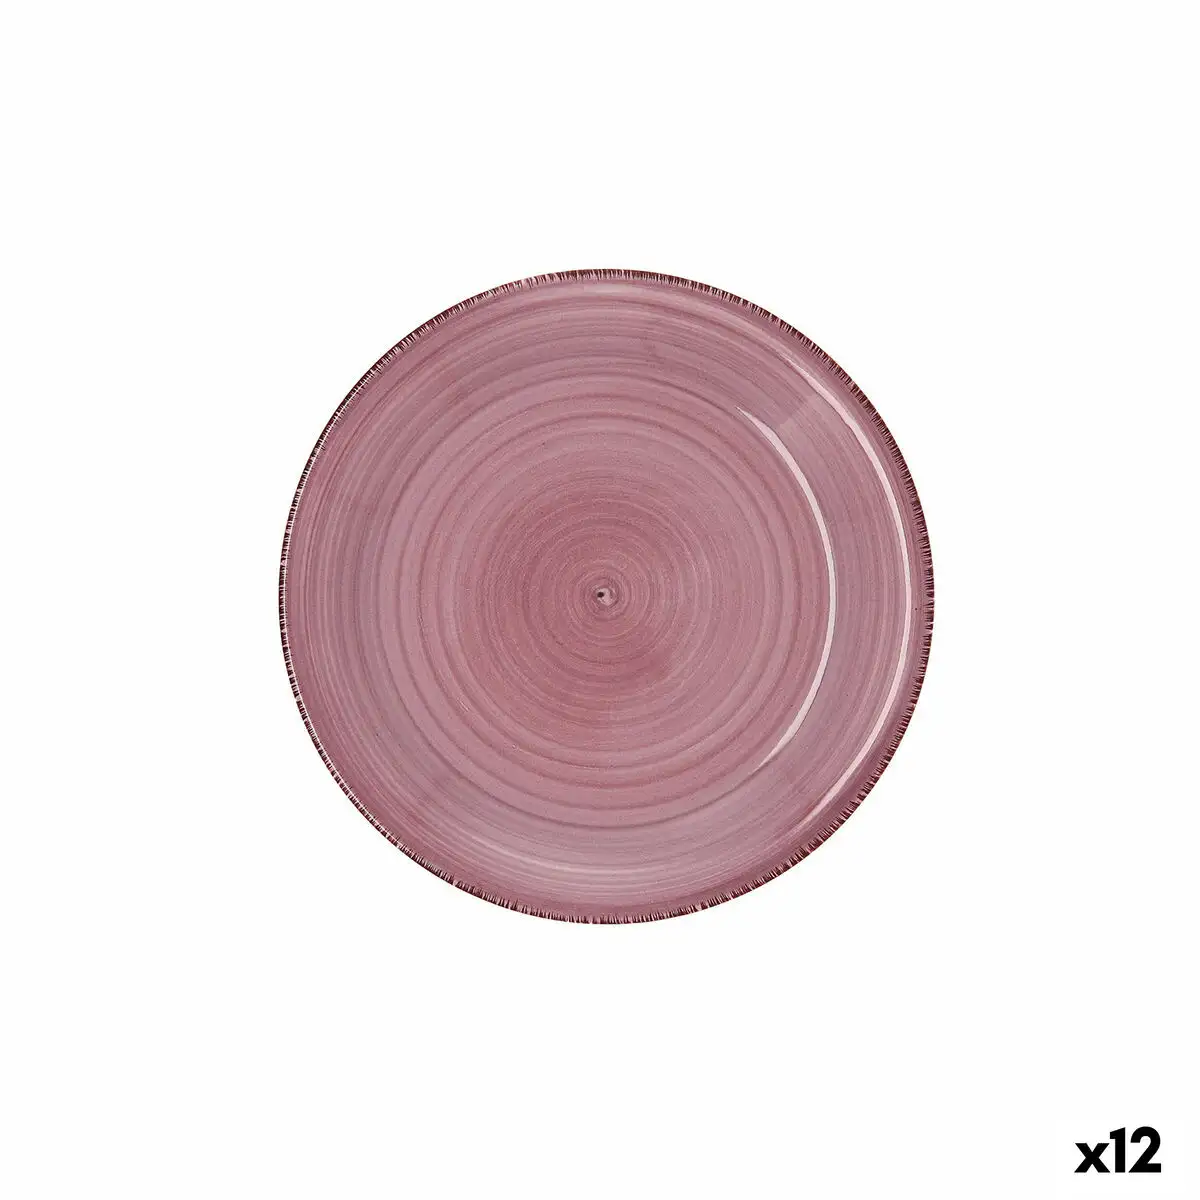 Assiette a dessert quid vita peoni rose ceramique 19 cm 12 unites _1658. DIAYTAR SENEGAL - Votre Oasis de Shopping en Ligne. Explorez notre boutique et découvrez des produits qui ajoutent une touche de magie à votre quotidien.